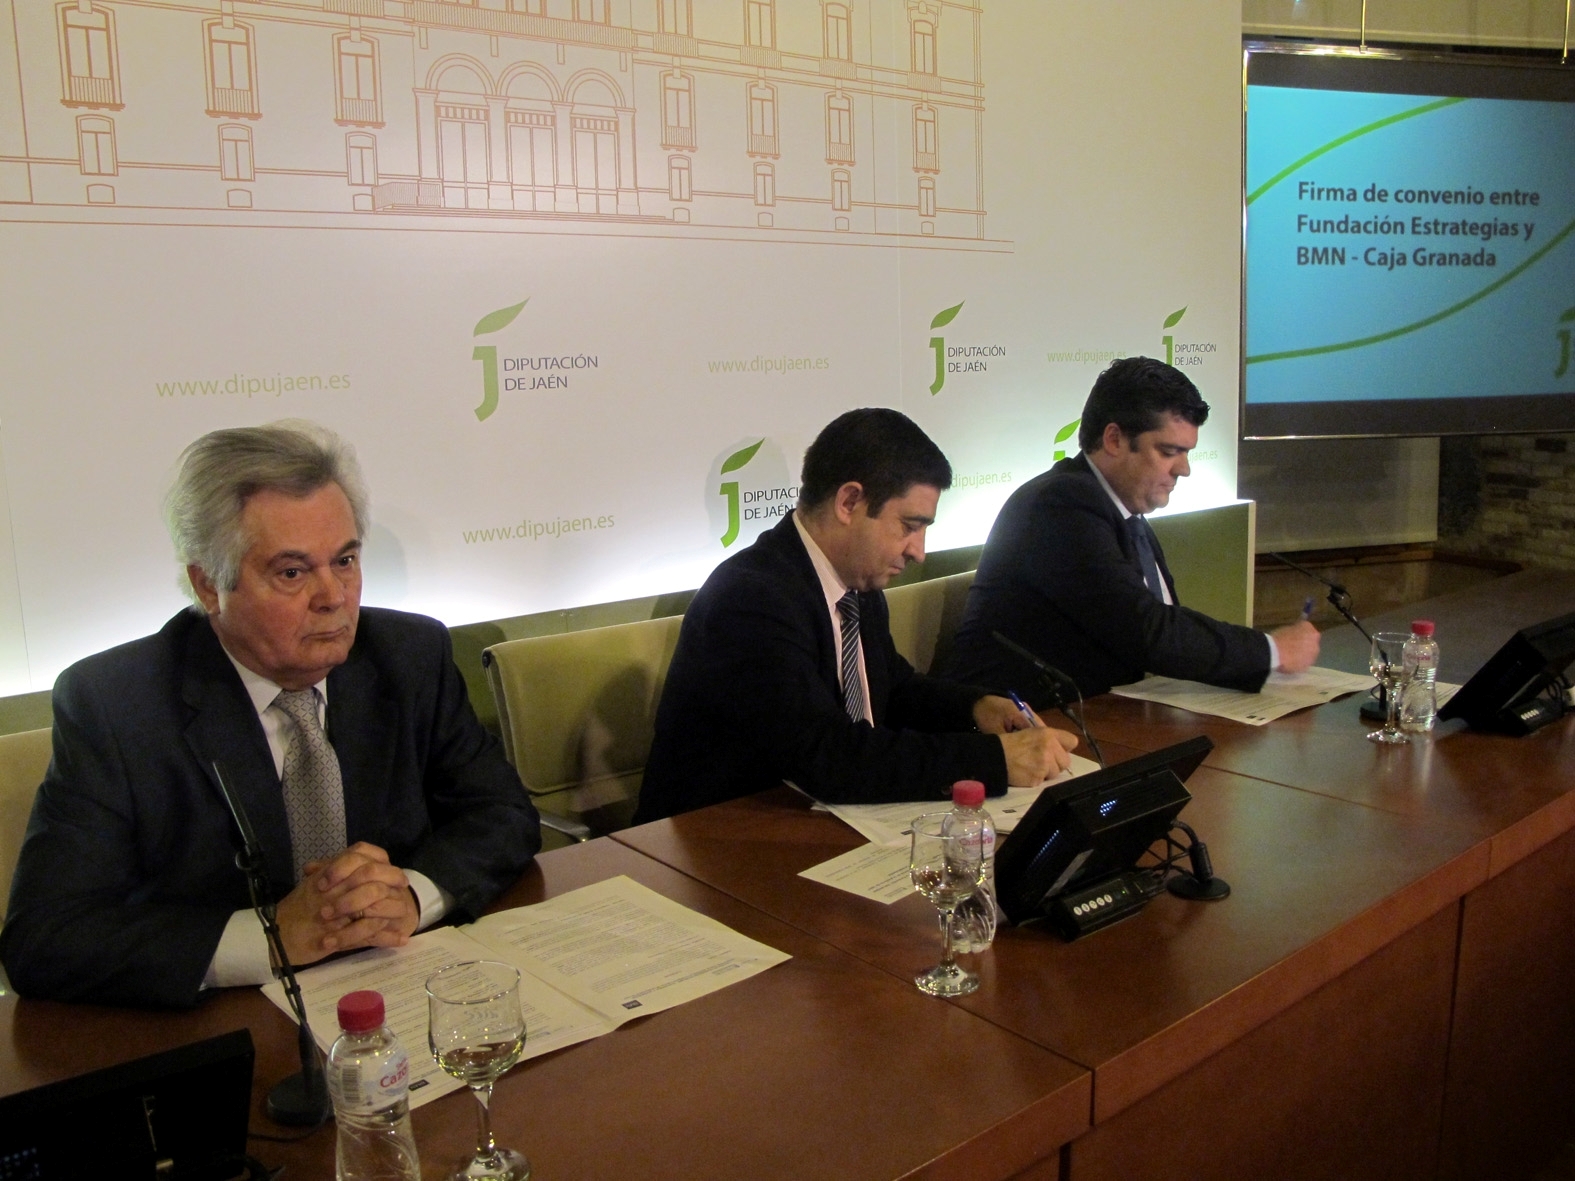 Antonio Jara Andréu, Francisco Reyes Martínez y Salvador Curiel Chaves en el momento de la firma del Convenio